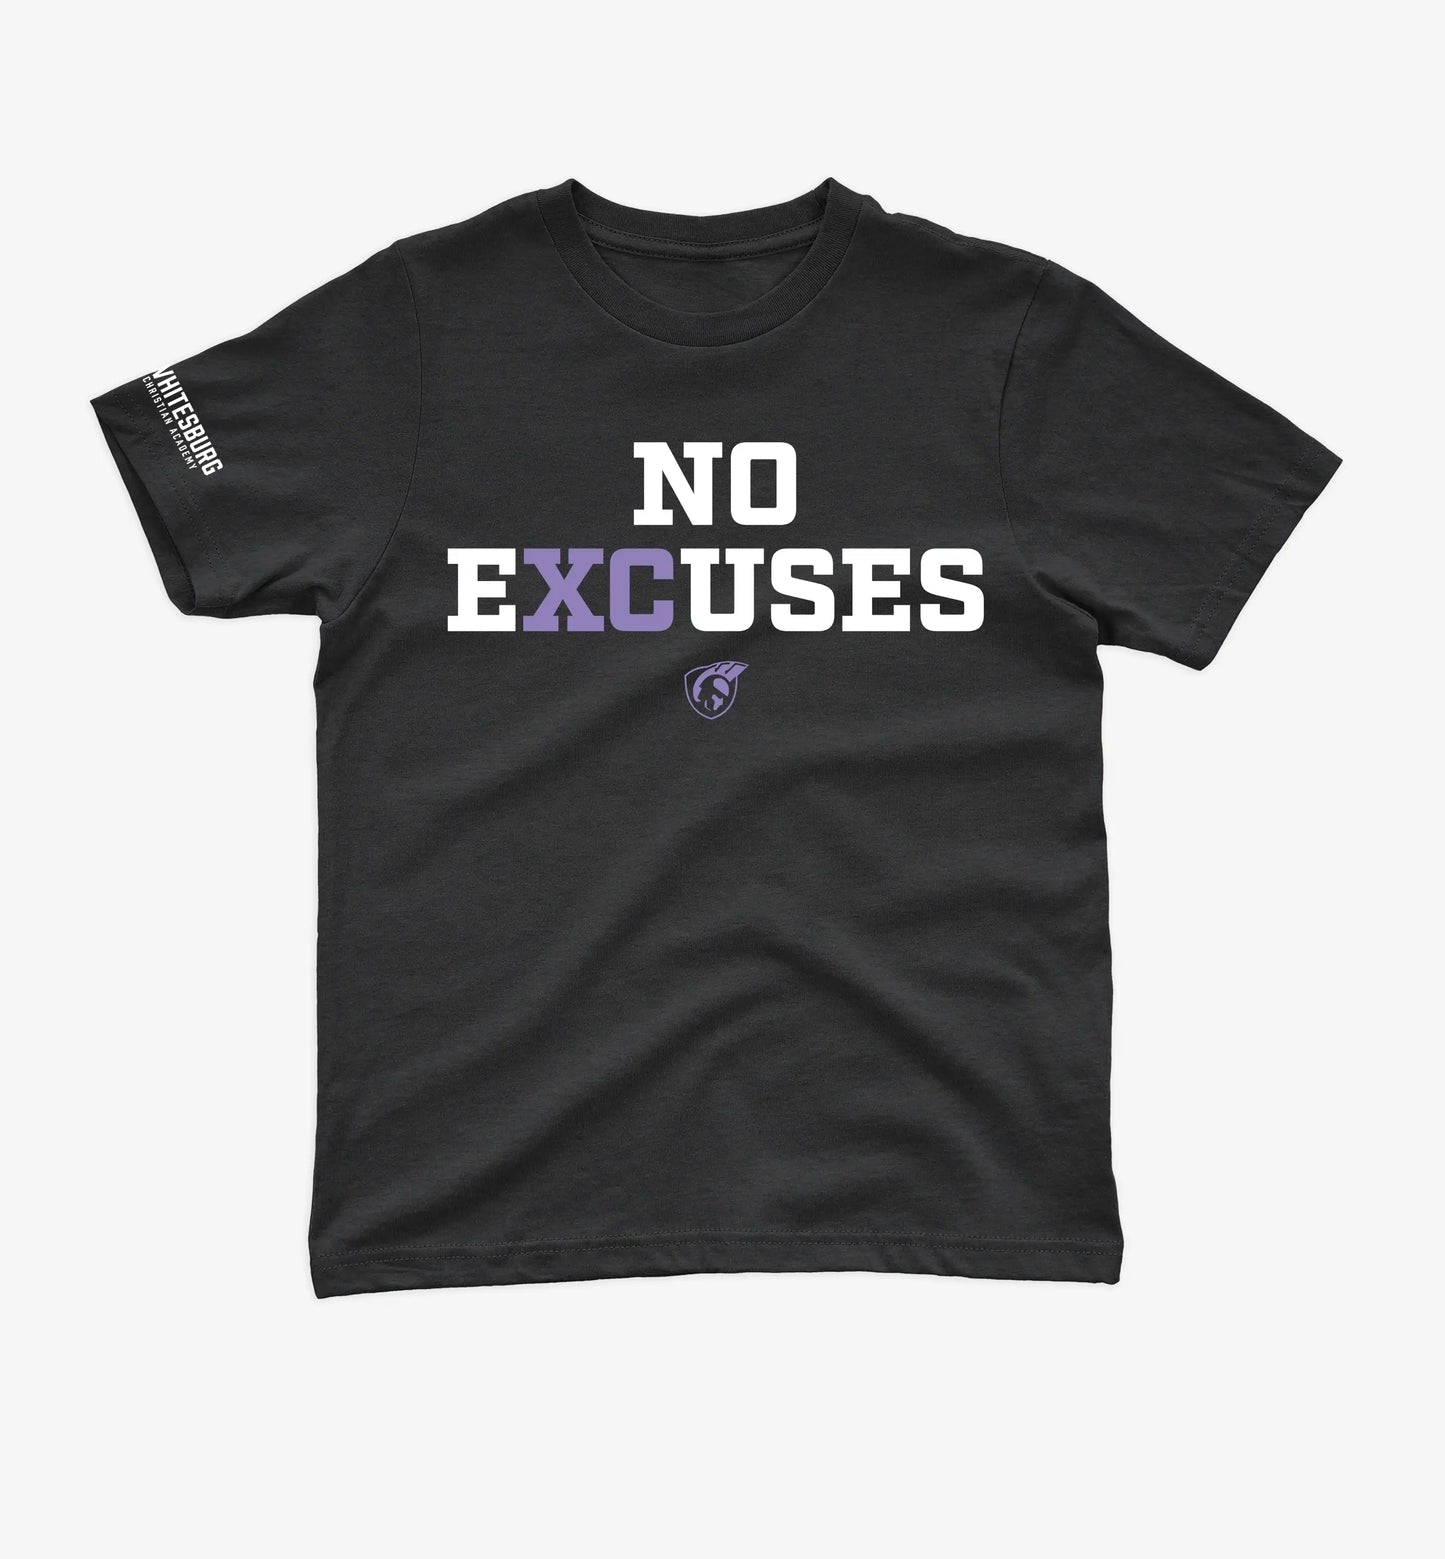 YOUTH XC - No Excuses Tshirt